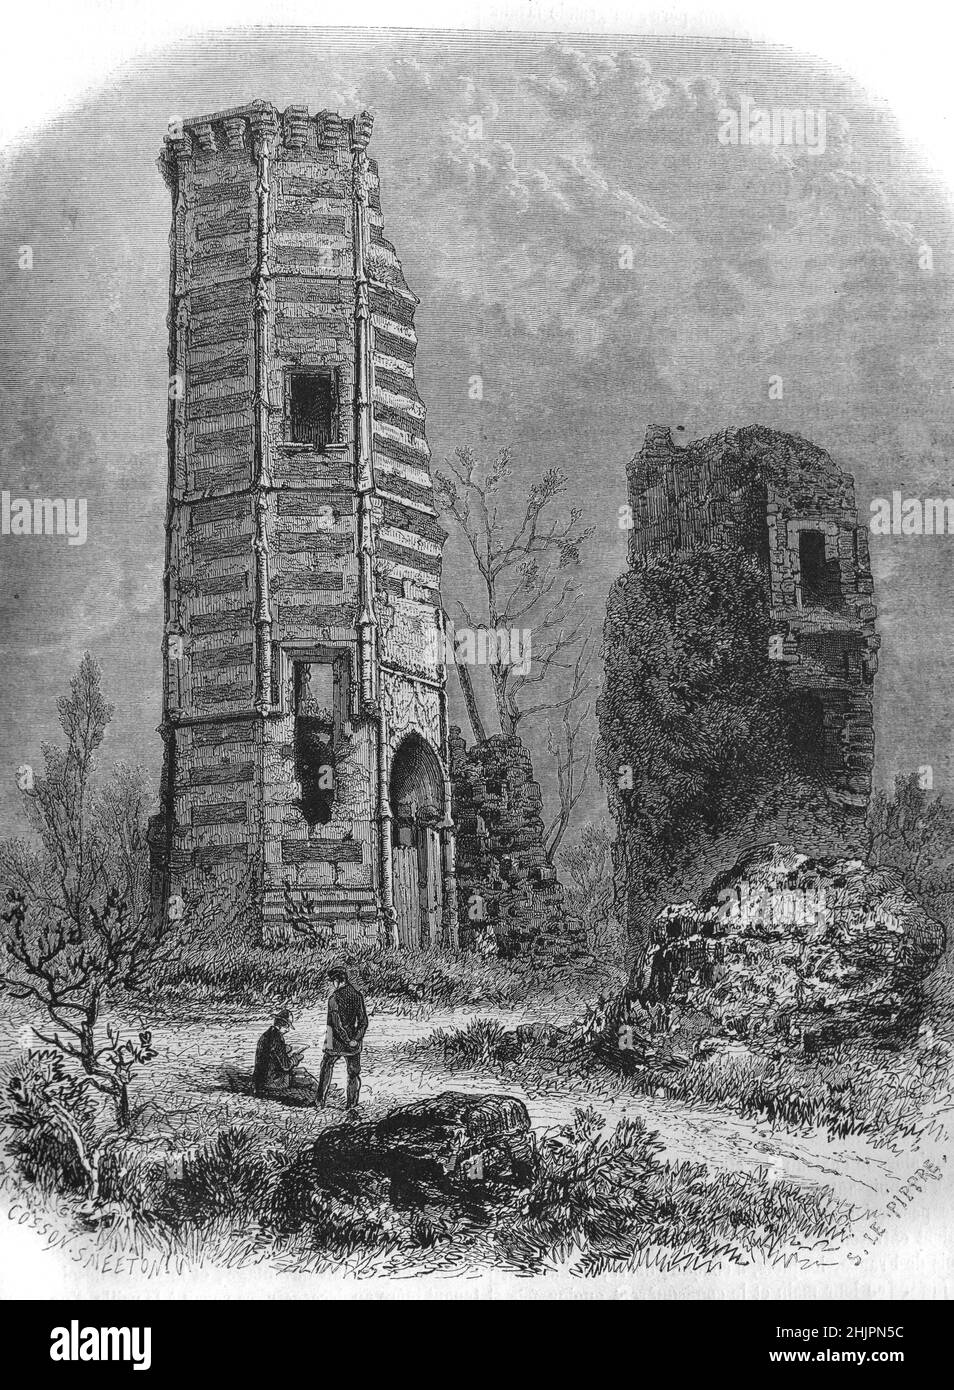 Ruinen des Schlosses Montfort-l'Amaury oder des Schlosses, darunter der Turm der Anne der Bretagne, Yvelines France. Vintage Illustration oder Gravur 1865 Stockfoto